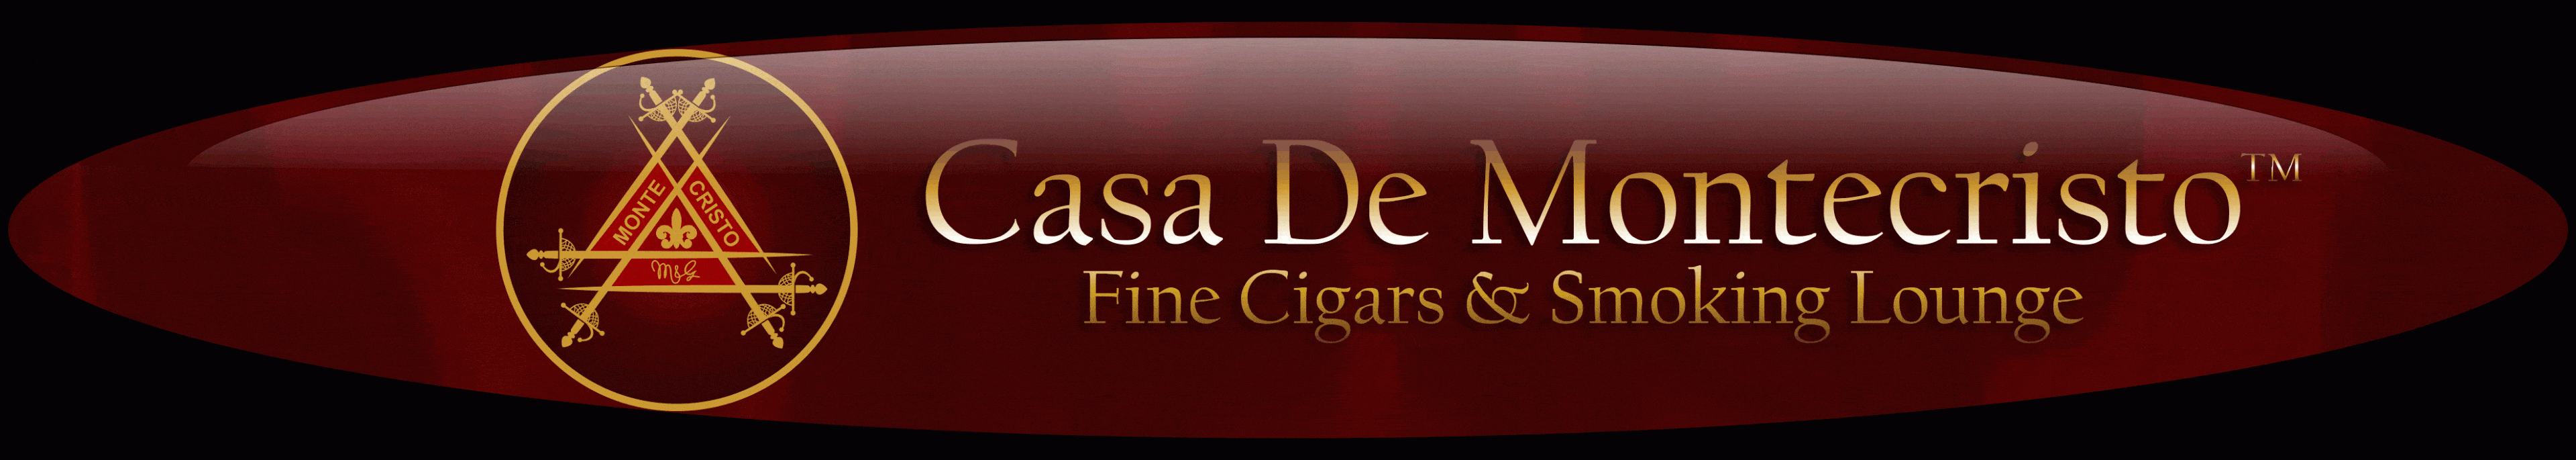 Cigar News: Tabacalera USA To Open ‘Casa de Montecristo’ Store in Dallas